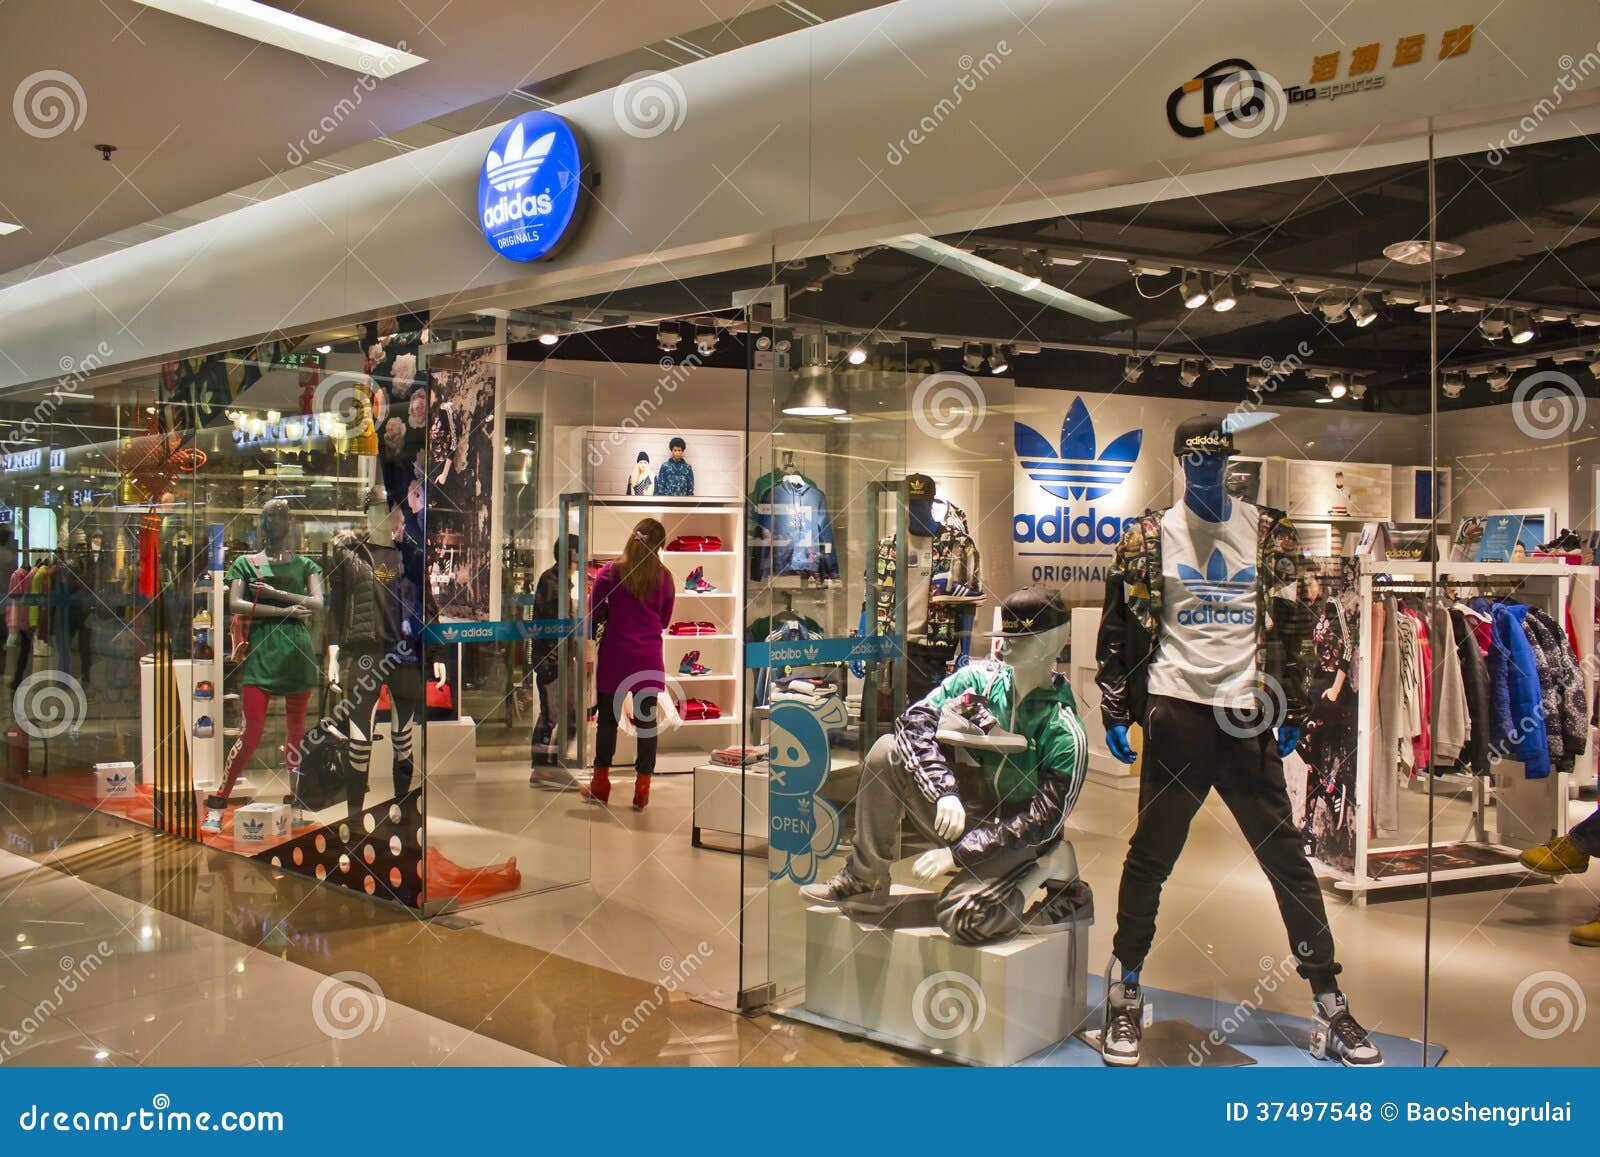 Adidas Se Divierte El Boutique Al Por Foto de archivo - Imagen de cliente, alameda: 37497548